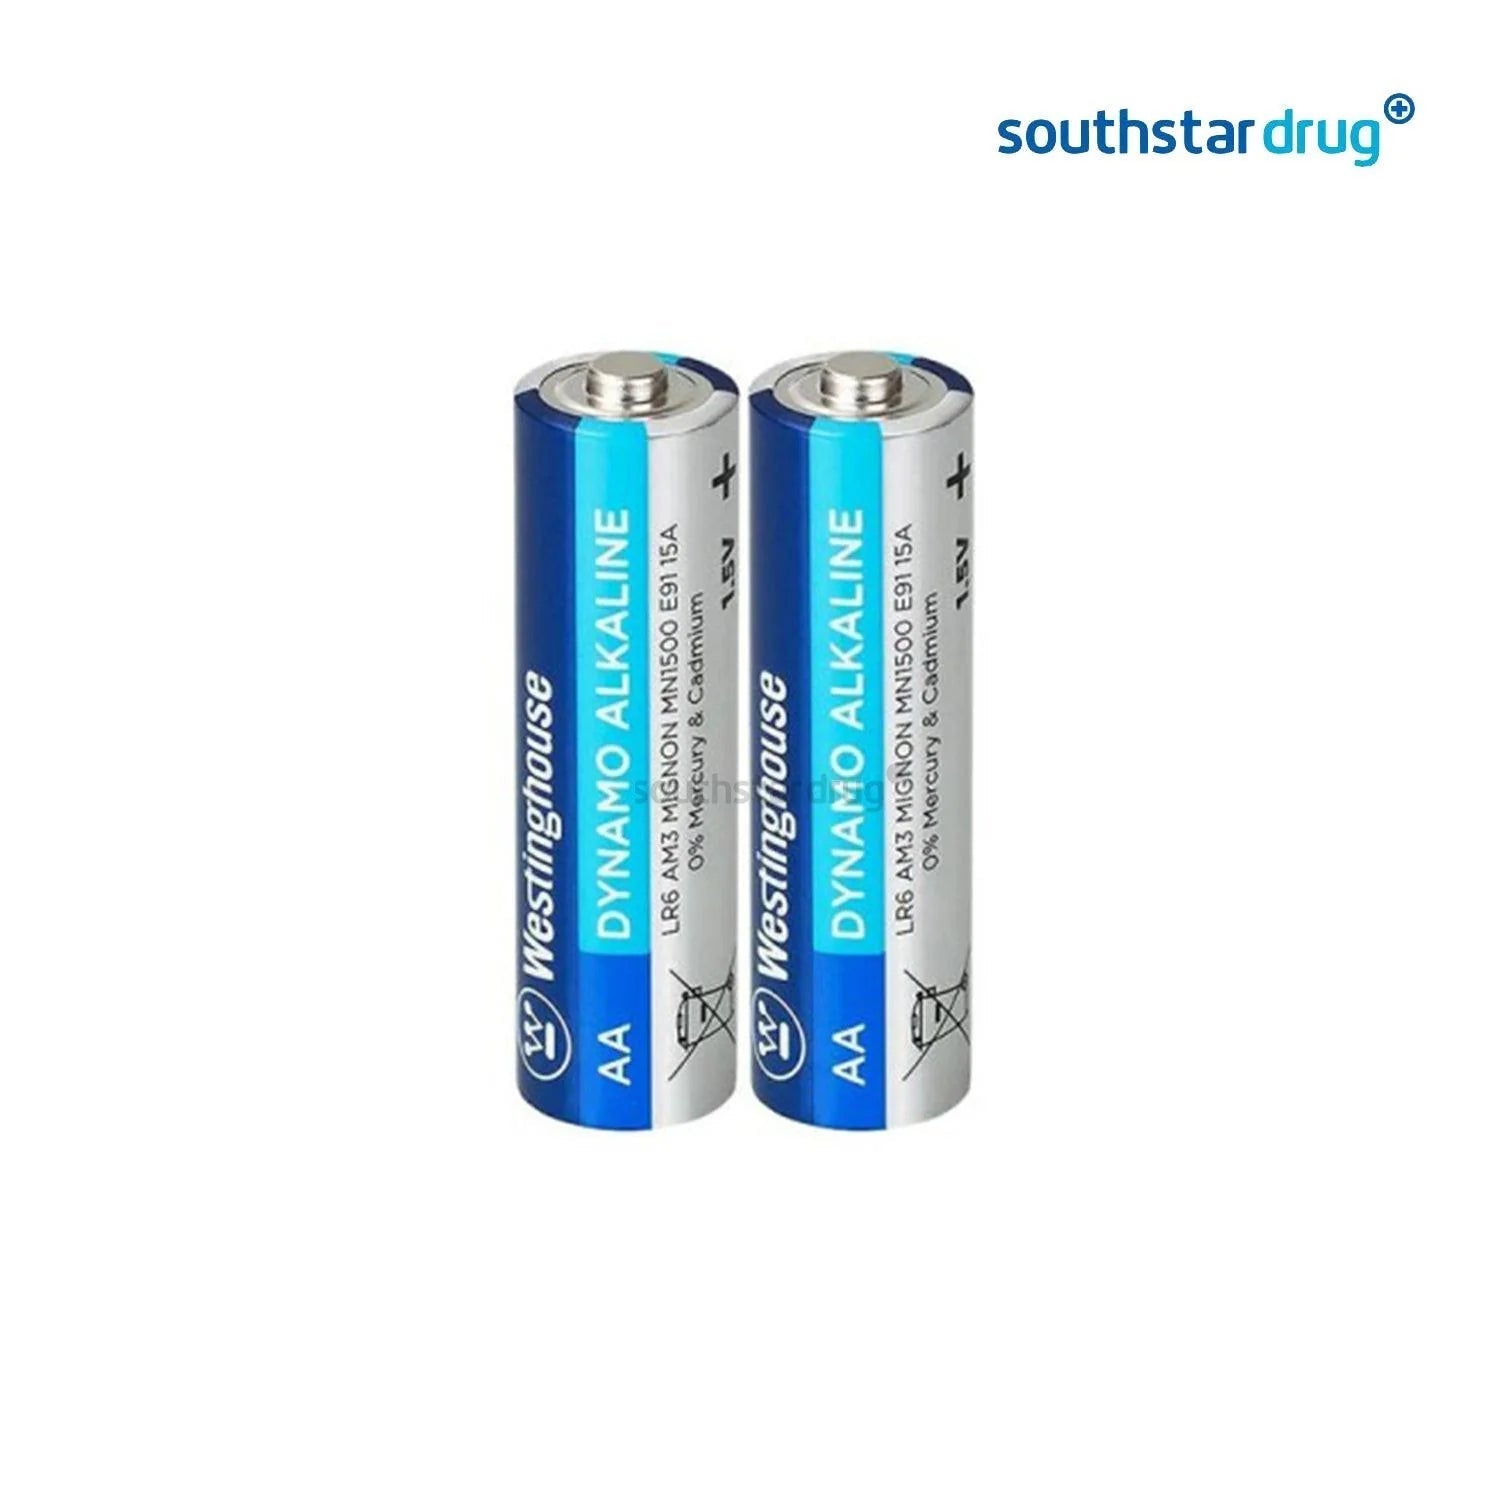 Westinghouse AA Dynamo Alkaline Batteries